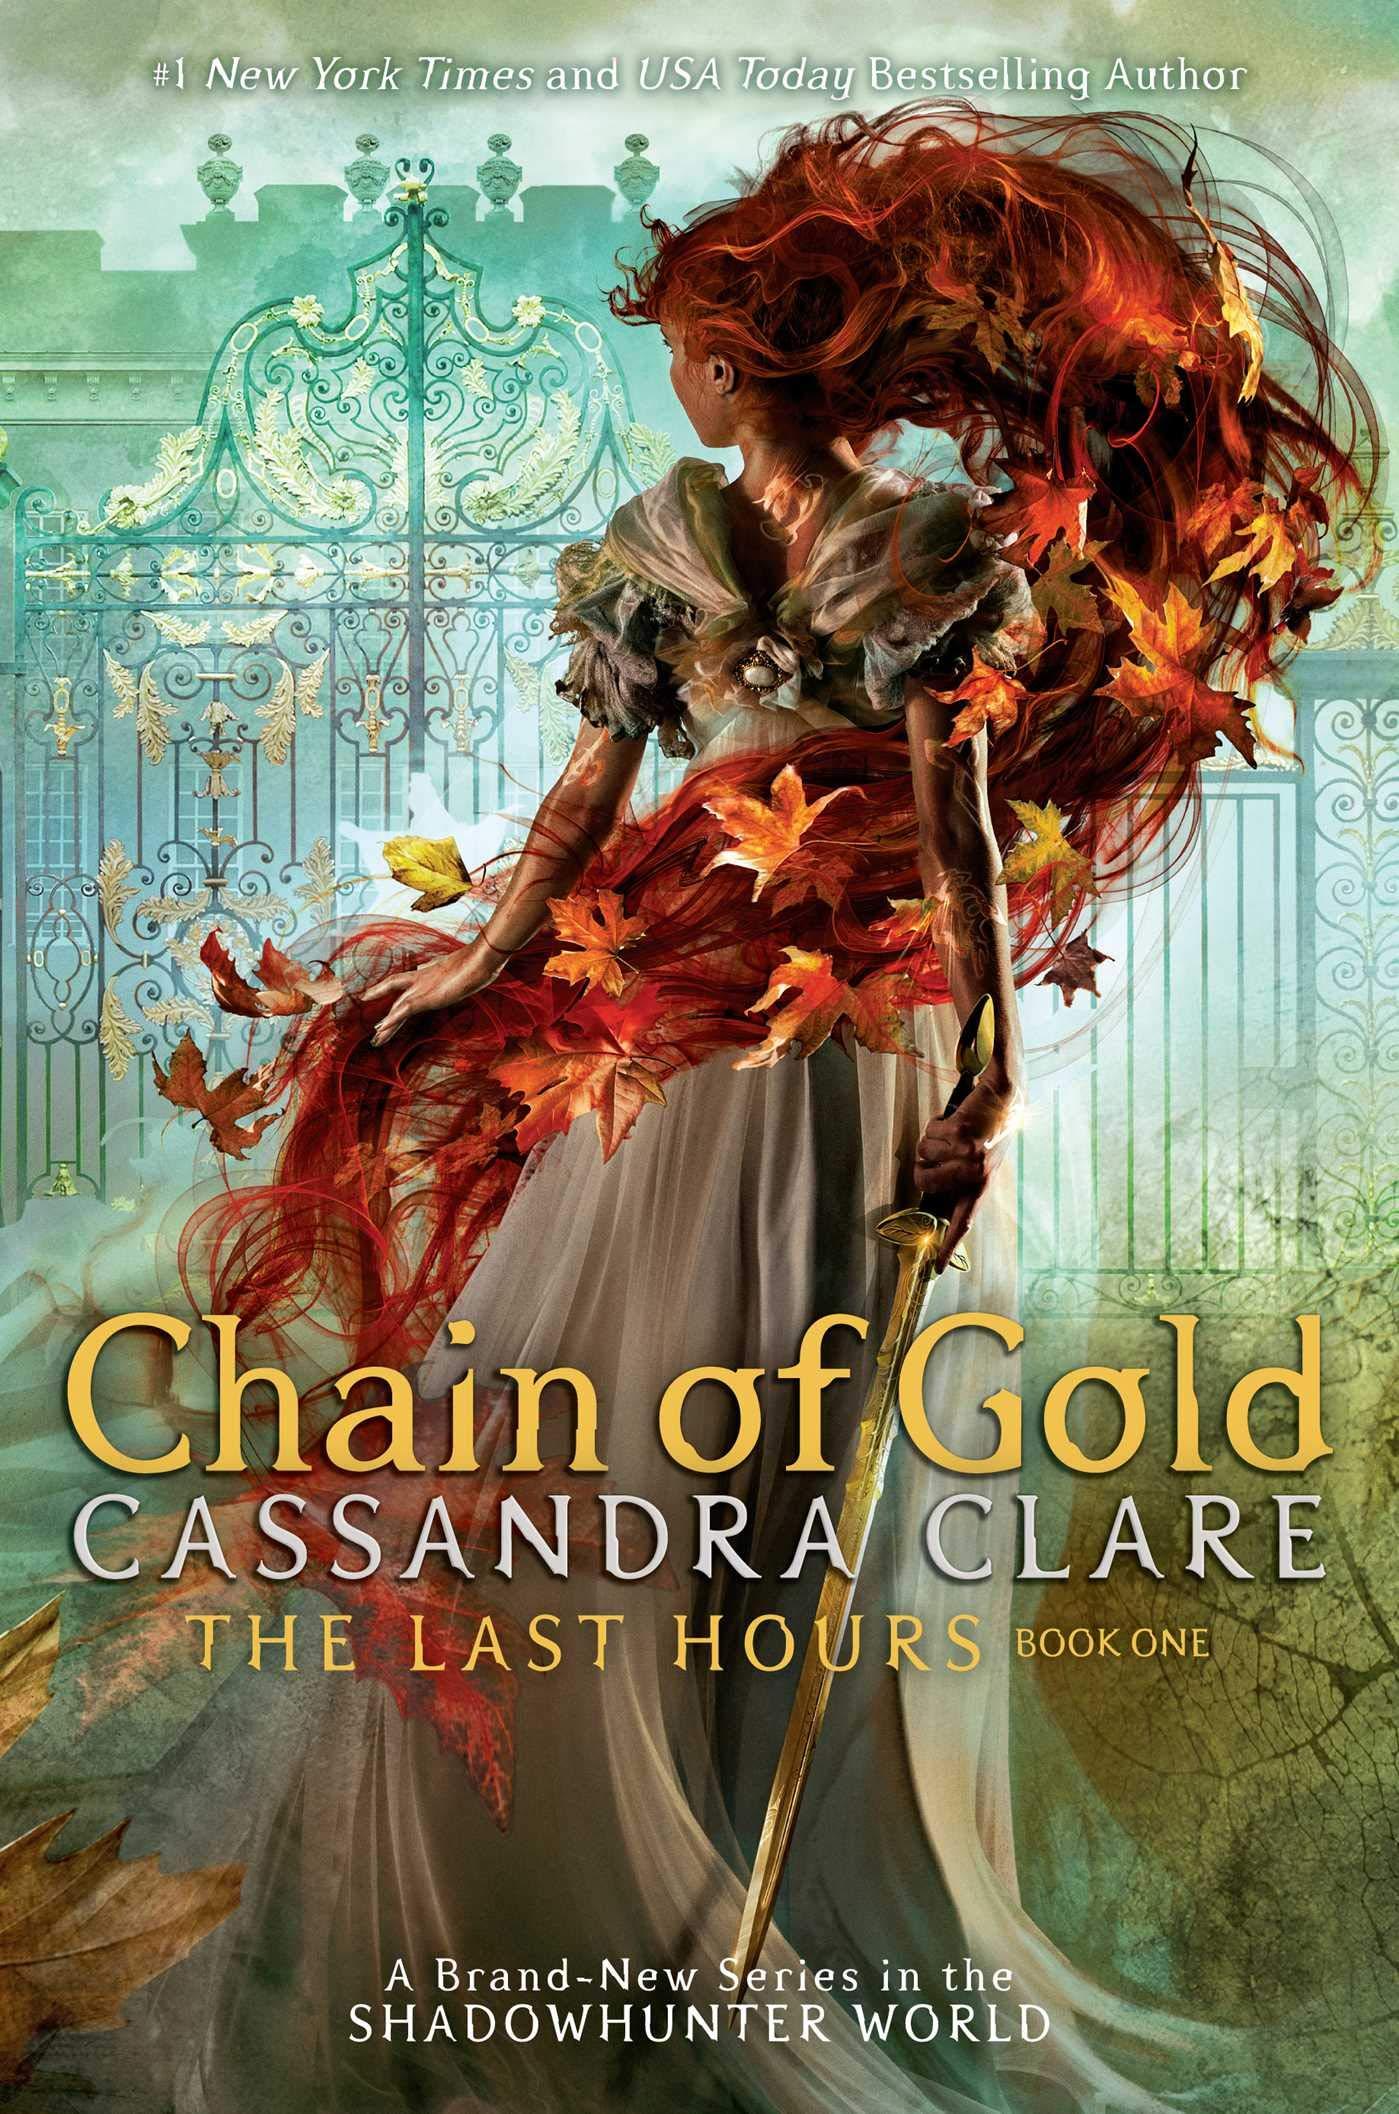 رواية "Chain of Gold" من أفضل روايات المراهقين في عام 2020